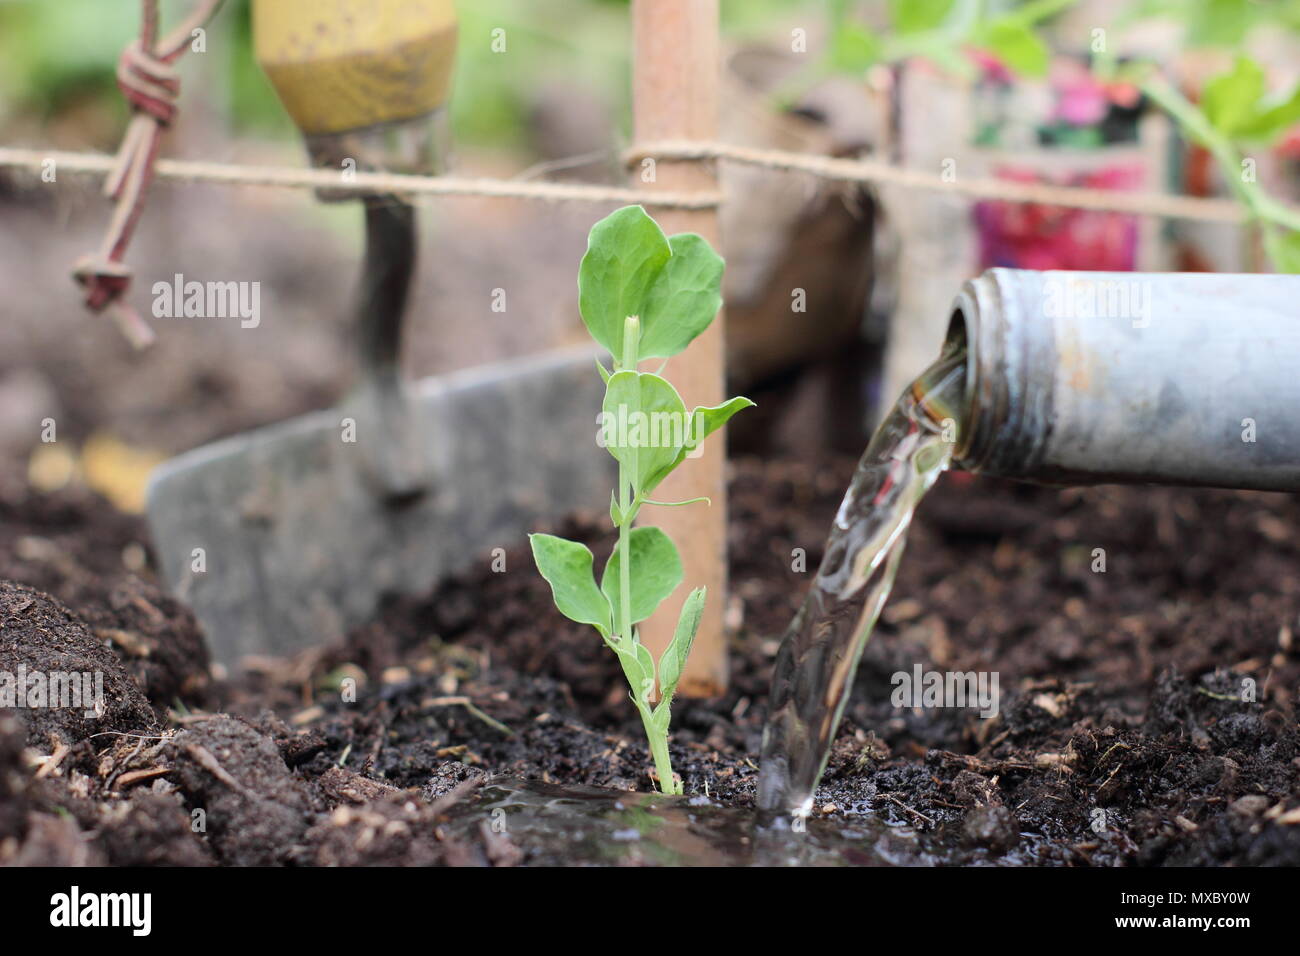 Lathyrus Odoratus. Die Bewässerung eine junge Sweet pea plant an der Basis von einem Stock und Garn wigwam Anlagenbetreuung, Frühling, Großbritannien Stockfoto